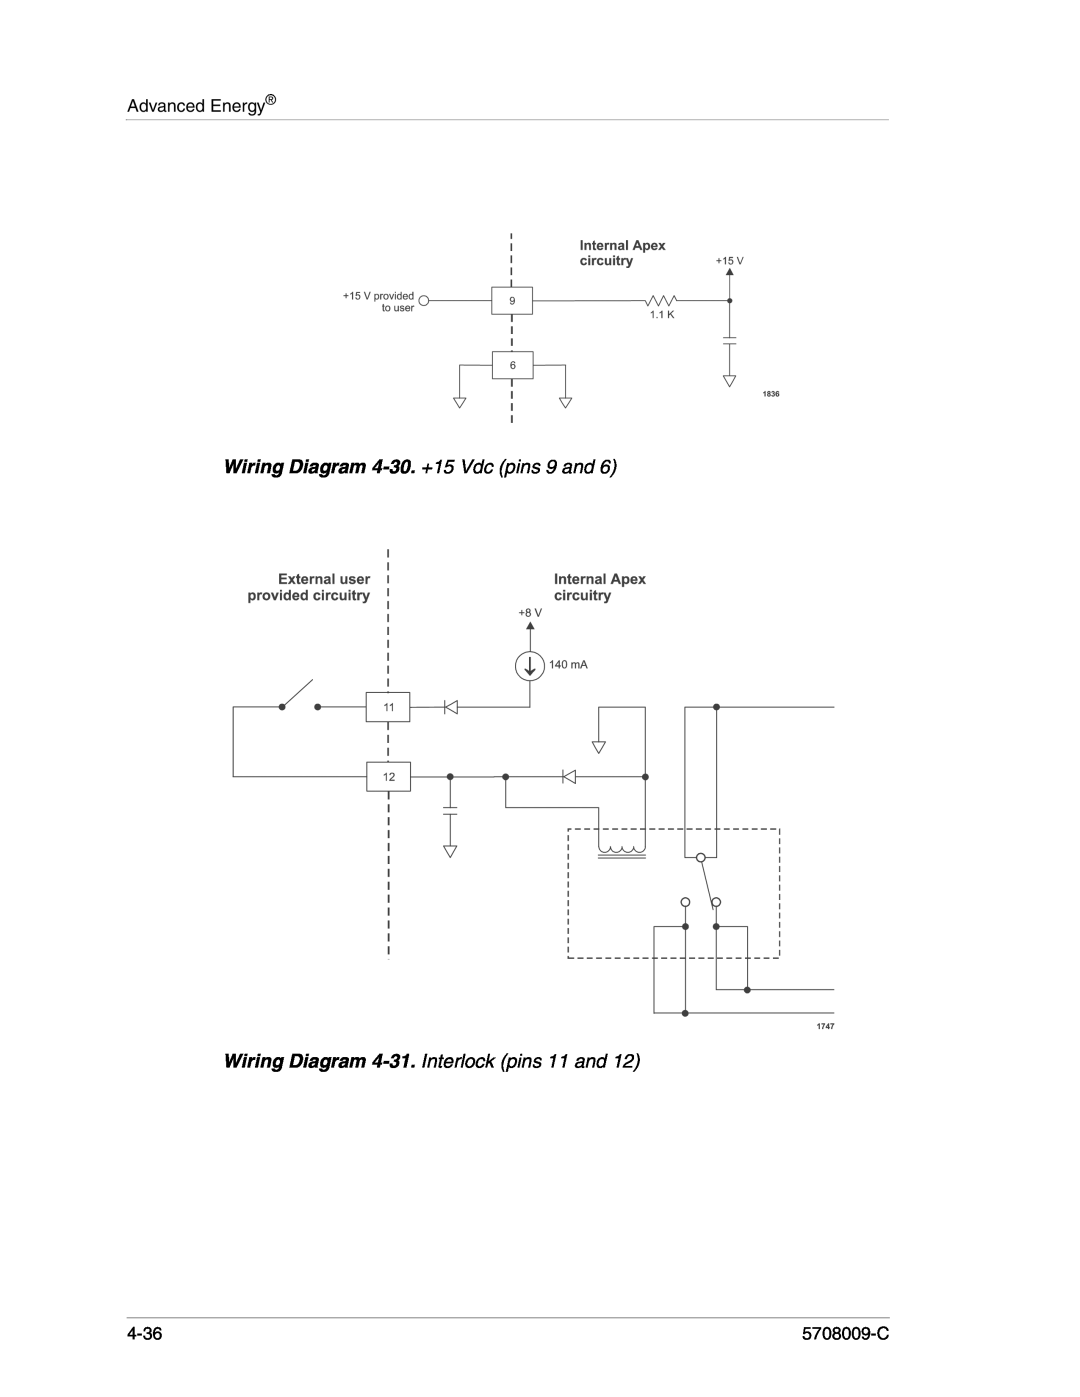 Apex Digital 5708009-C manual Wiring Diagram 4-30. +15 Vdc pins 9 and, Wiring Diagram 4-31. Interlock pins 11 and, 4-36 